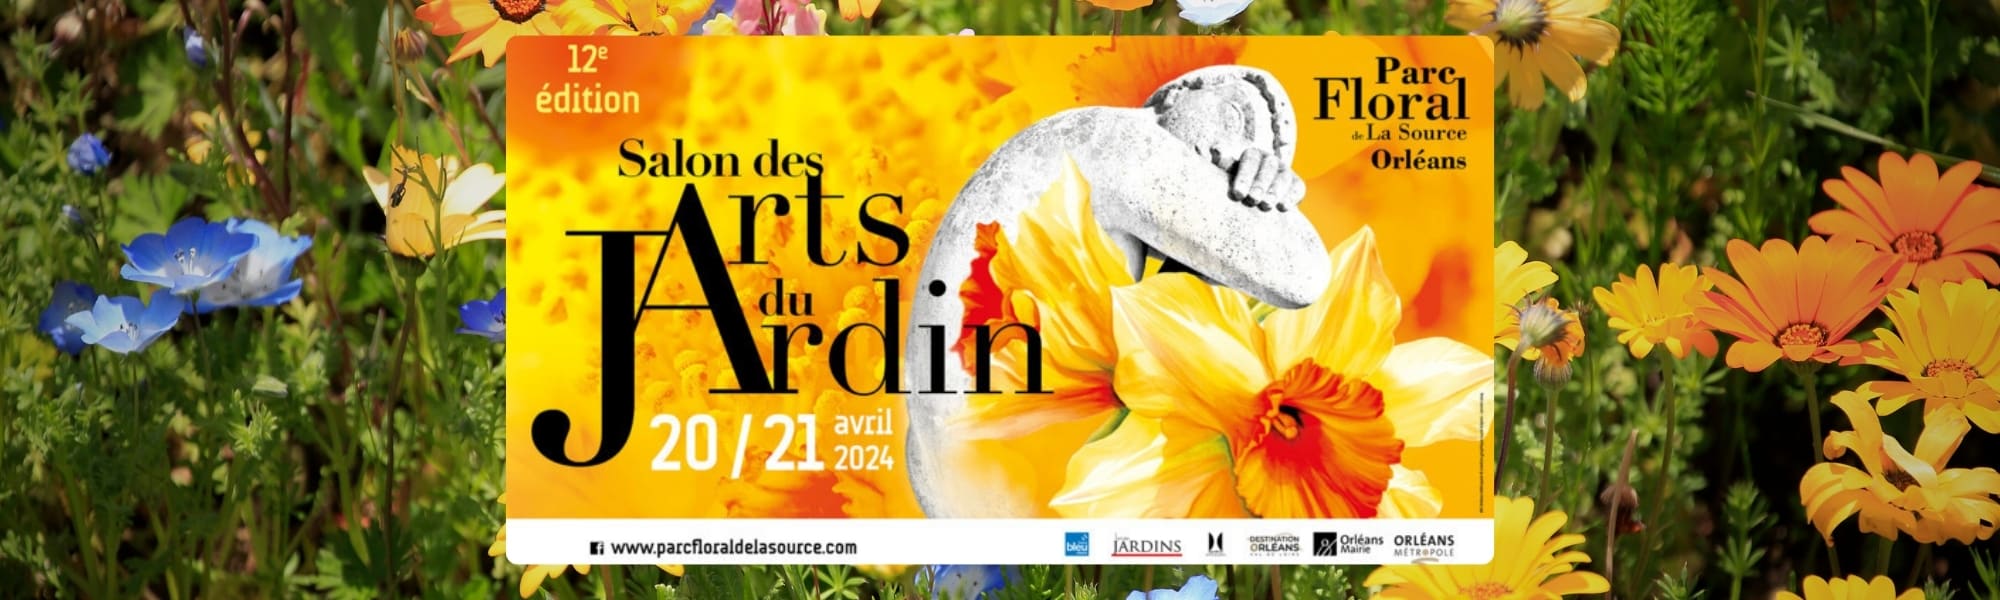 Le salon des Arts du Jardin du Parc floral d'Orléans La Source revient pour une 12ème édition!